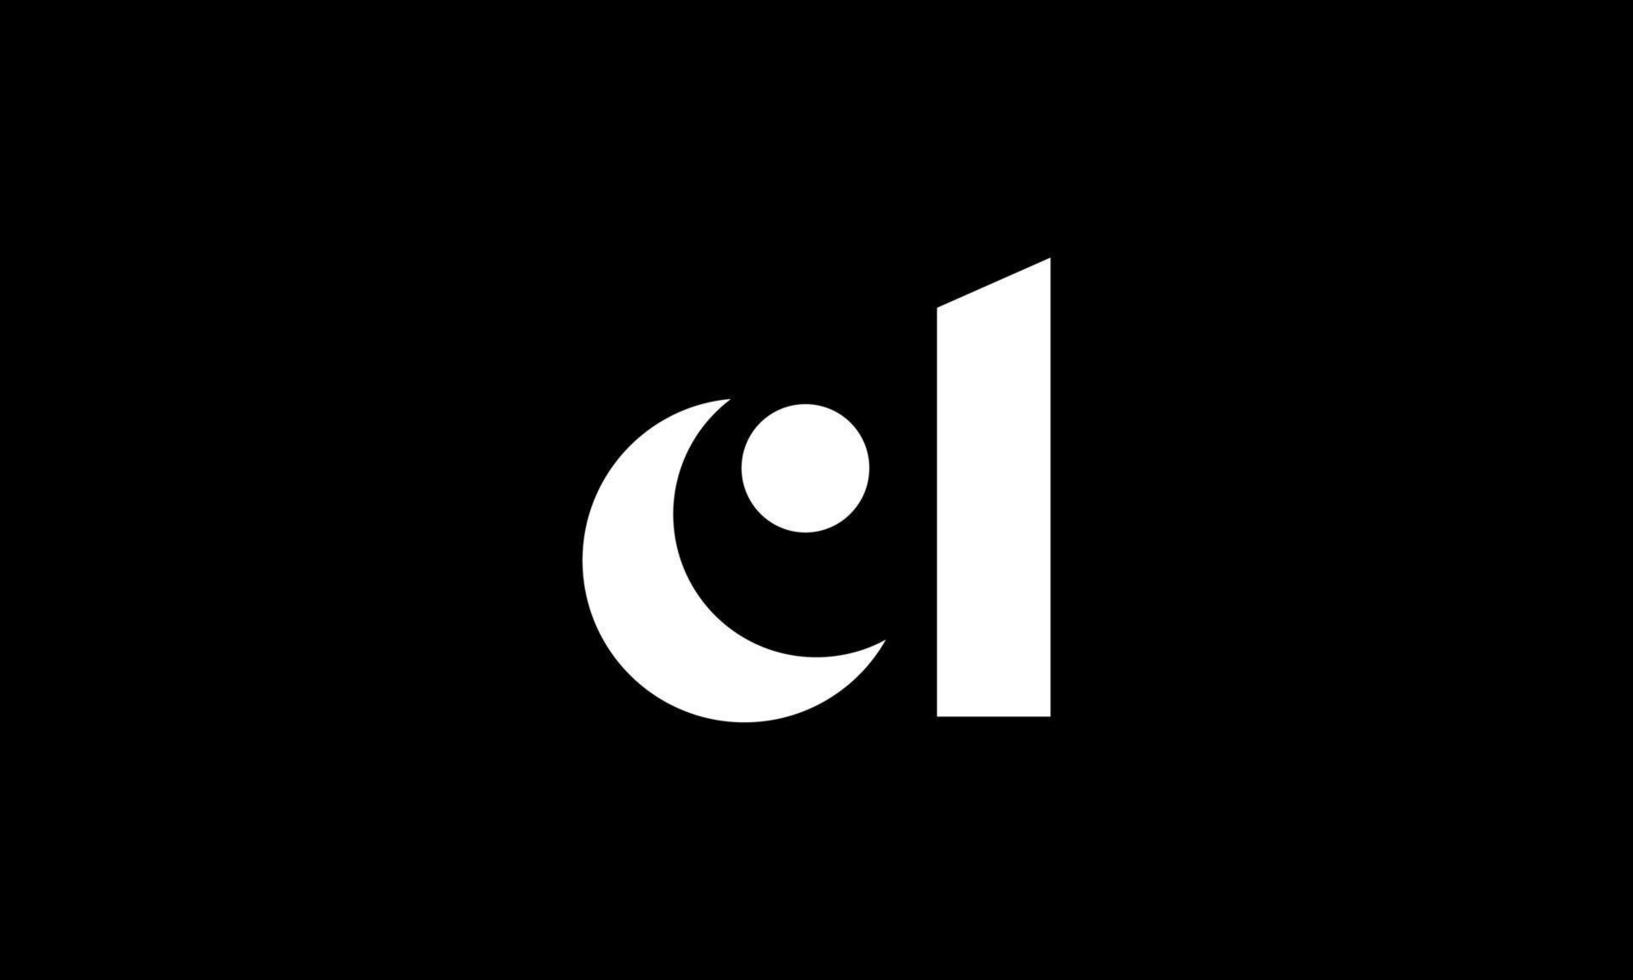 création de logo lettre initiale cl sur fond noir. vecteur professionnel.